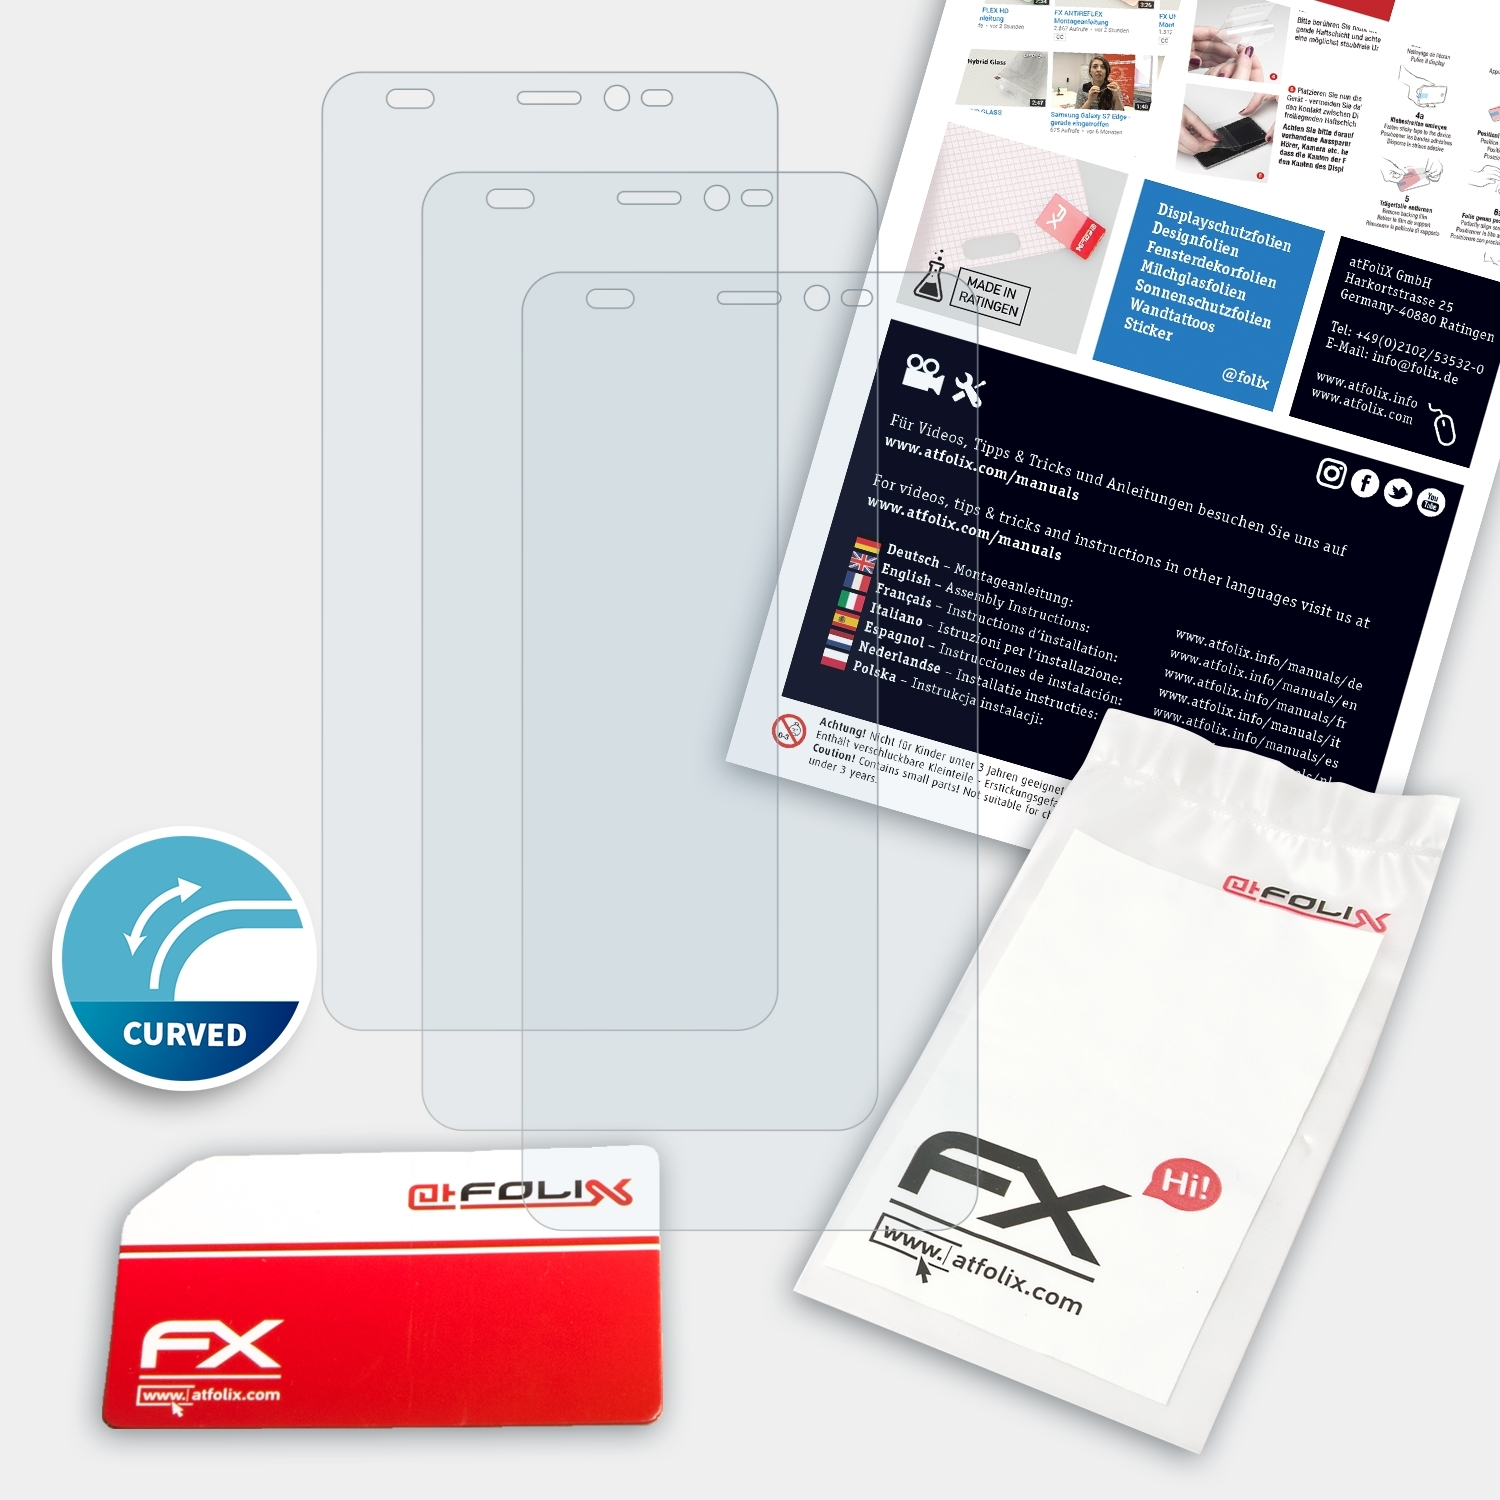 ATFOLIX 3x FX-ActiFleX Wiko Y60) Displayschutz(für